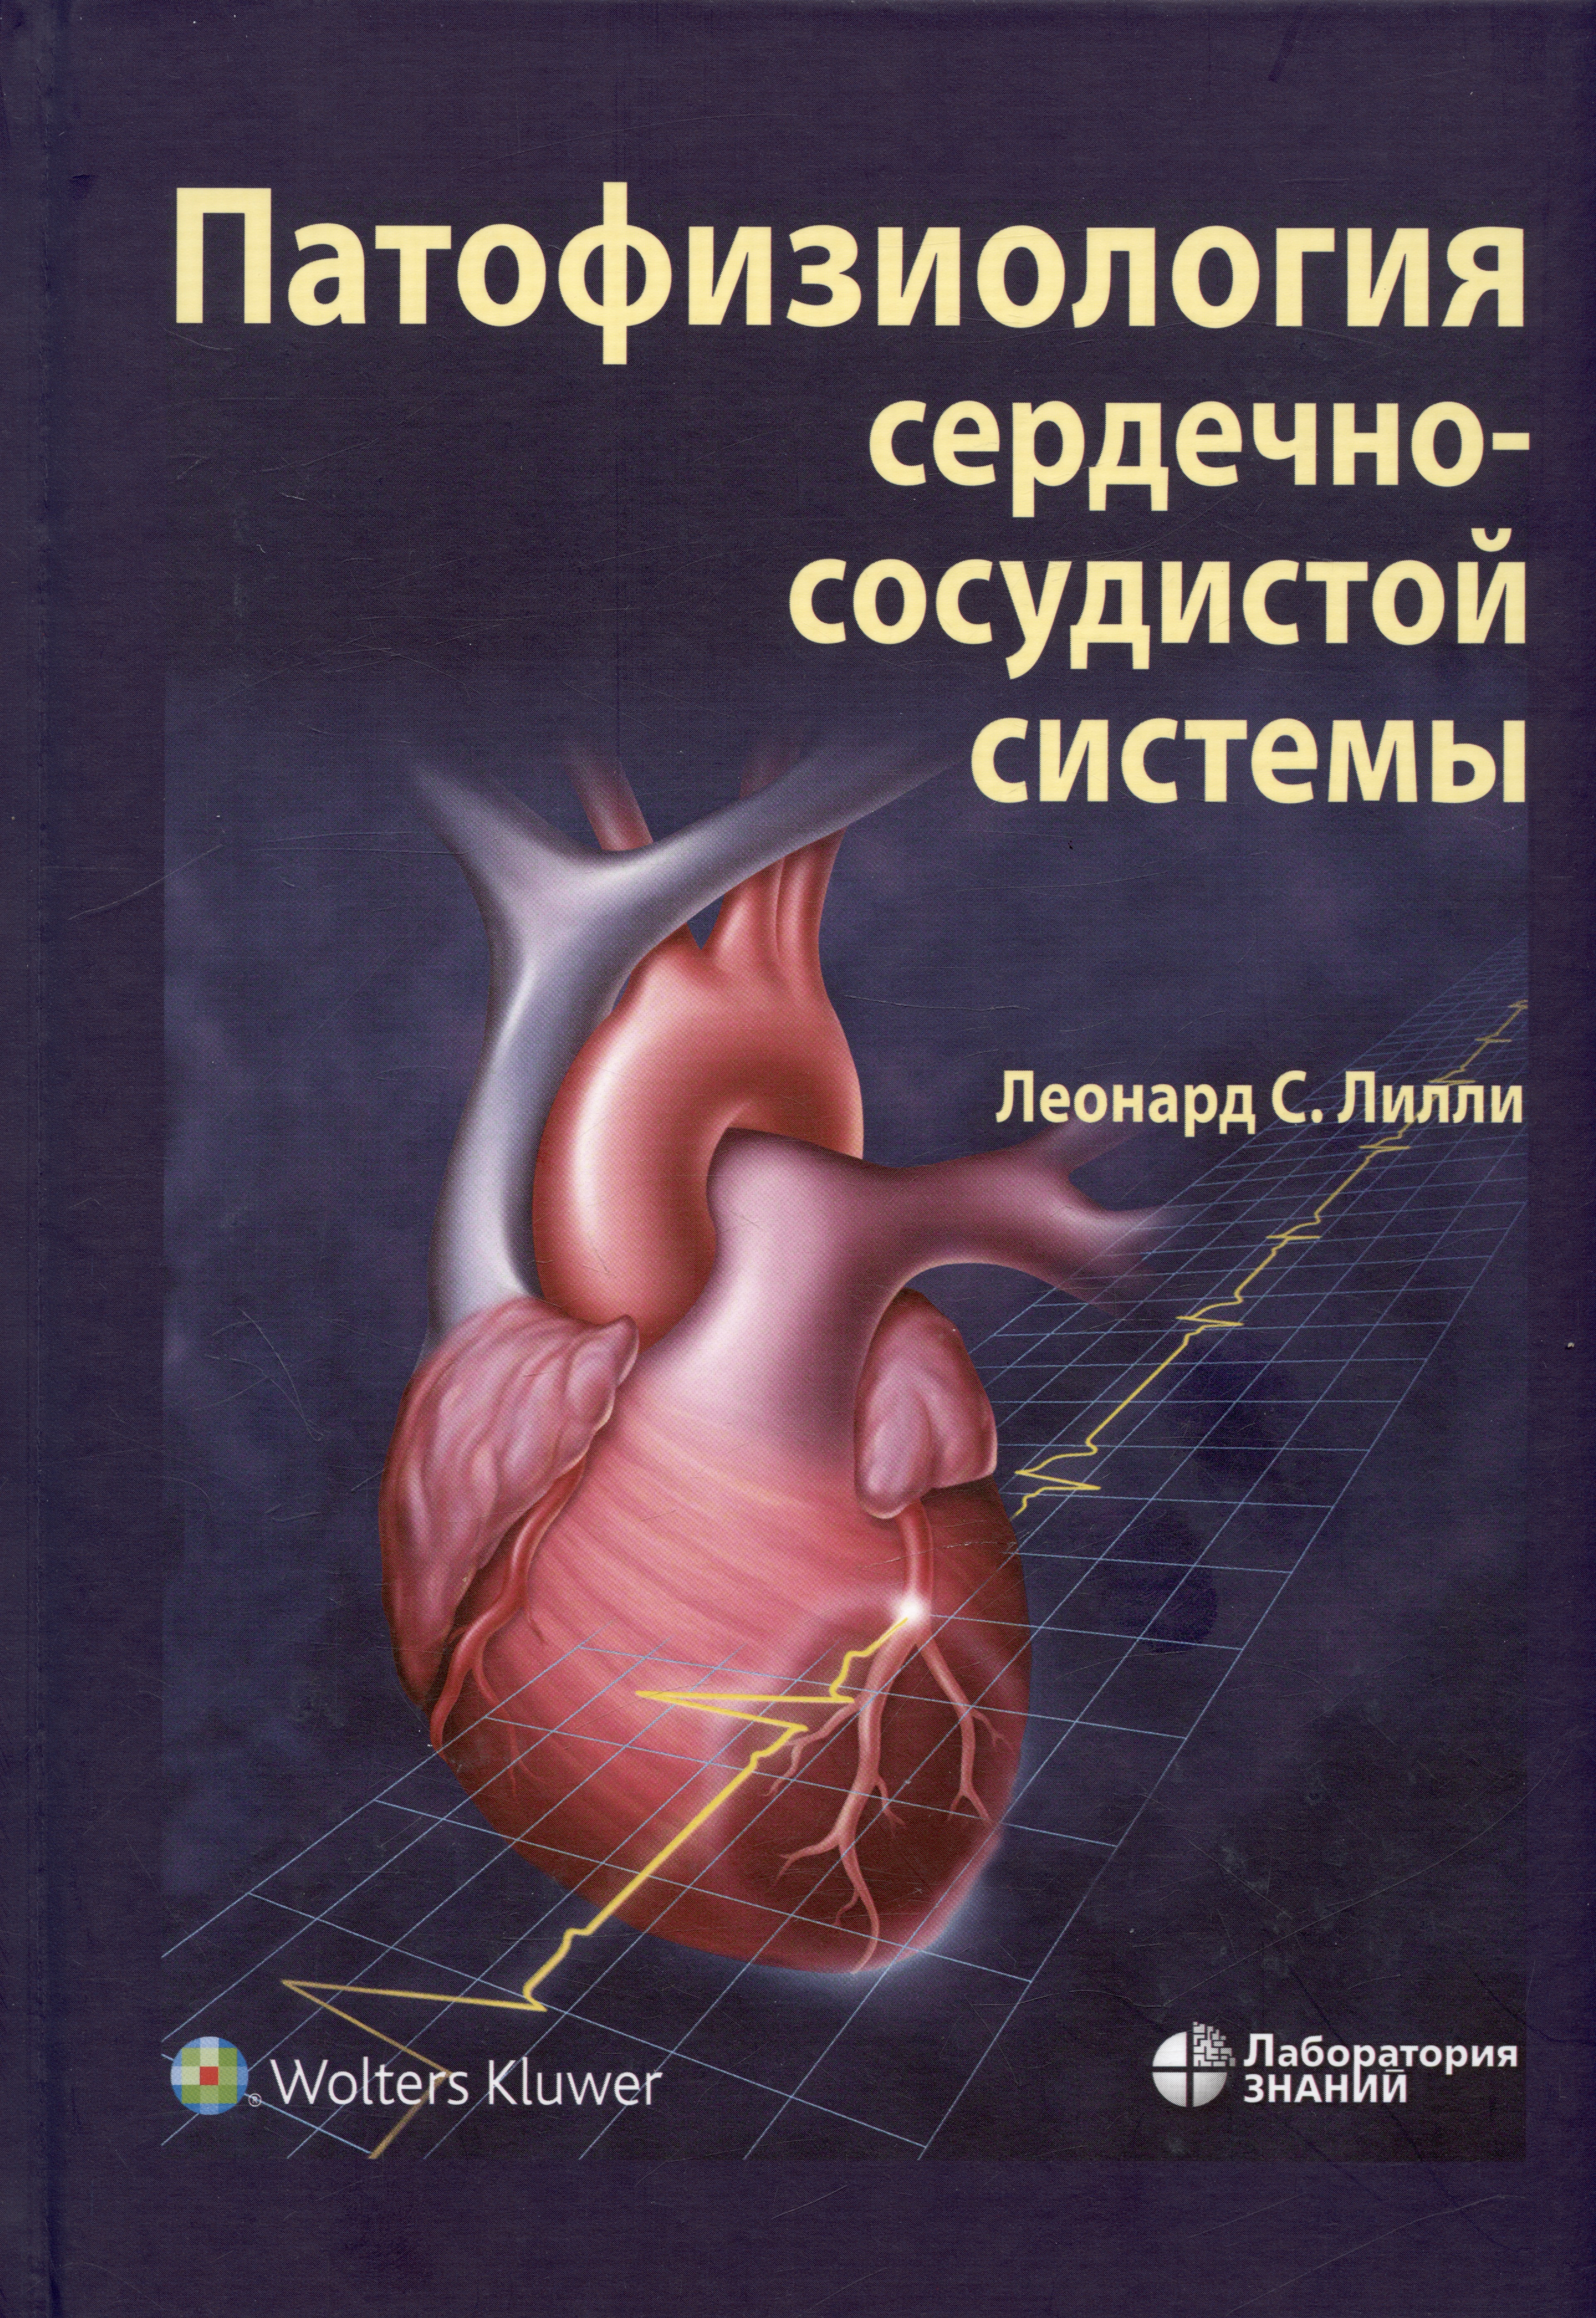 ника кардиотон защита сердечно сосудистой системы 30 капсул Патофизиология сердечно-сосудистой системы